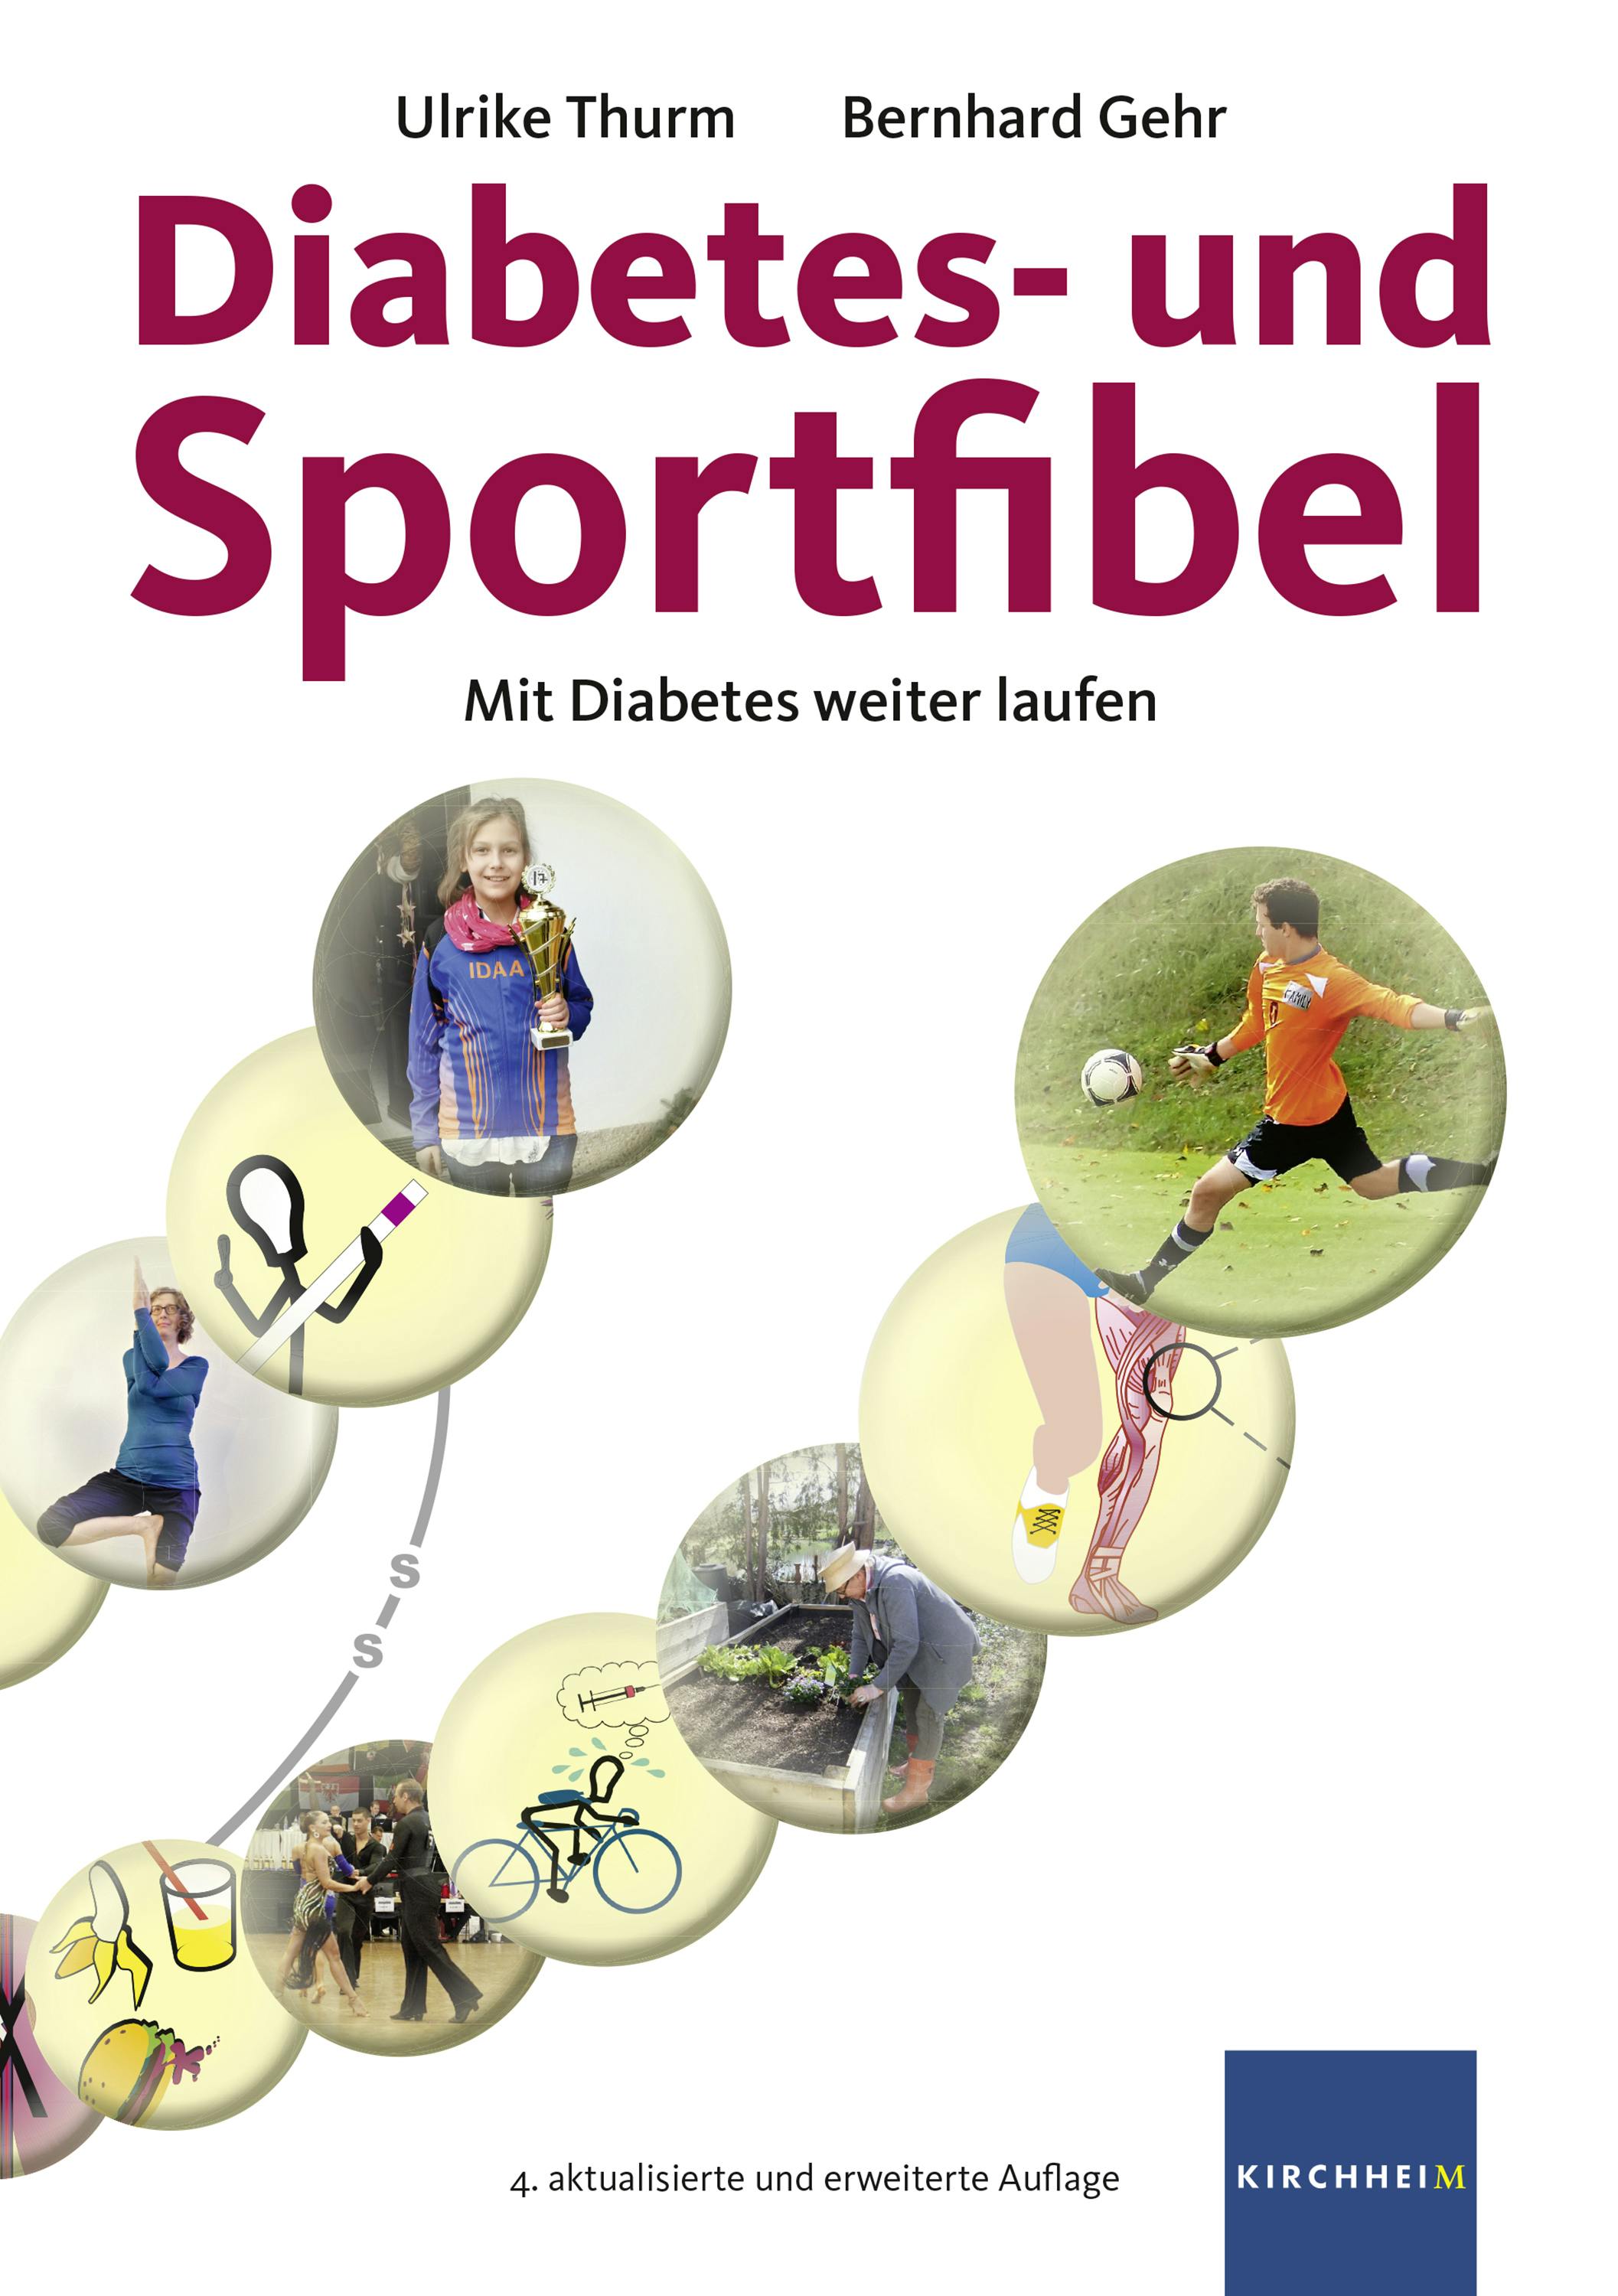 Diabetes- und Sportfibel: Mit Diabetes weiter laufen - Ulrike Thurm, Bernhard Gehr